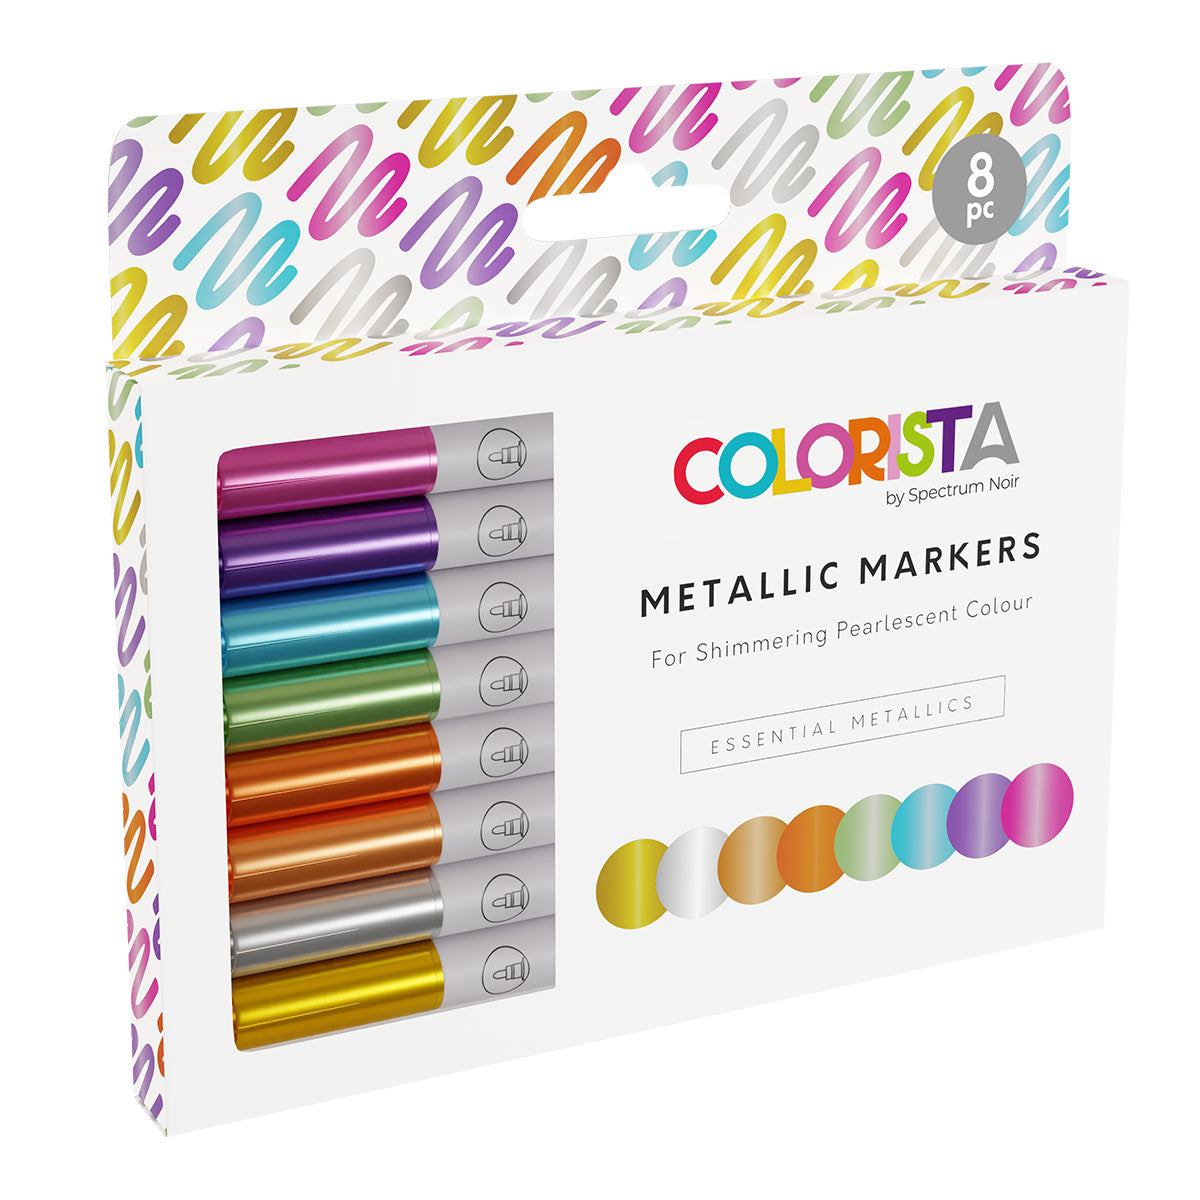 Spectrum Noir Colorista - Metallic Markers (8 set) Essential Metallics